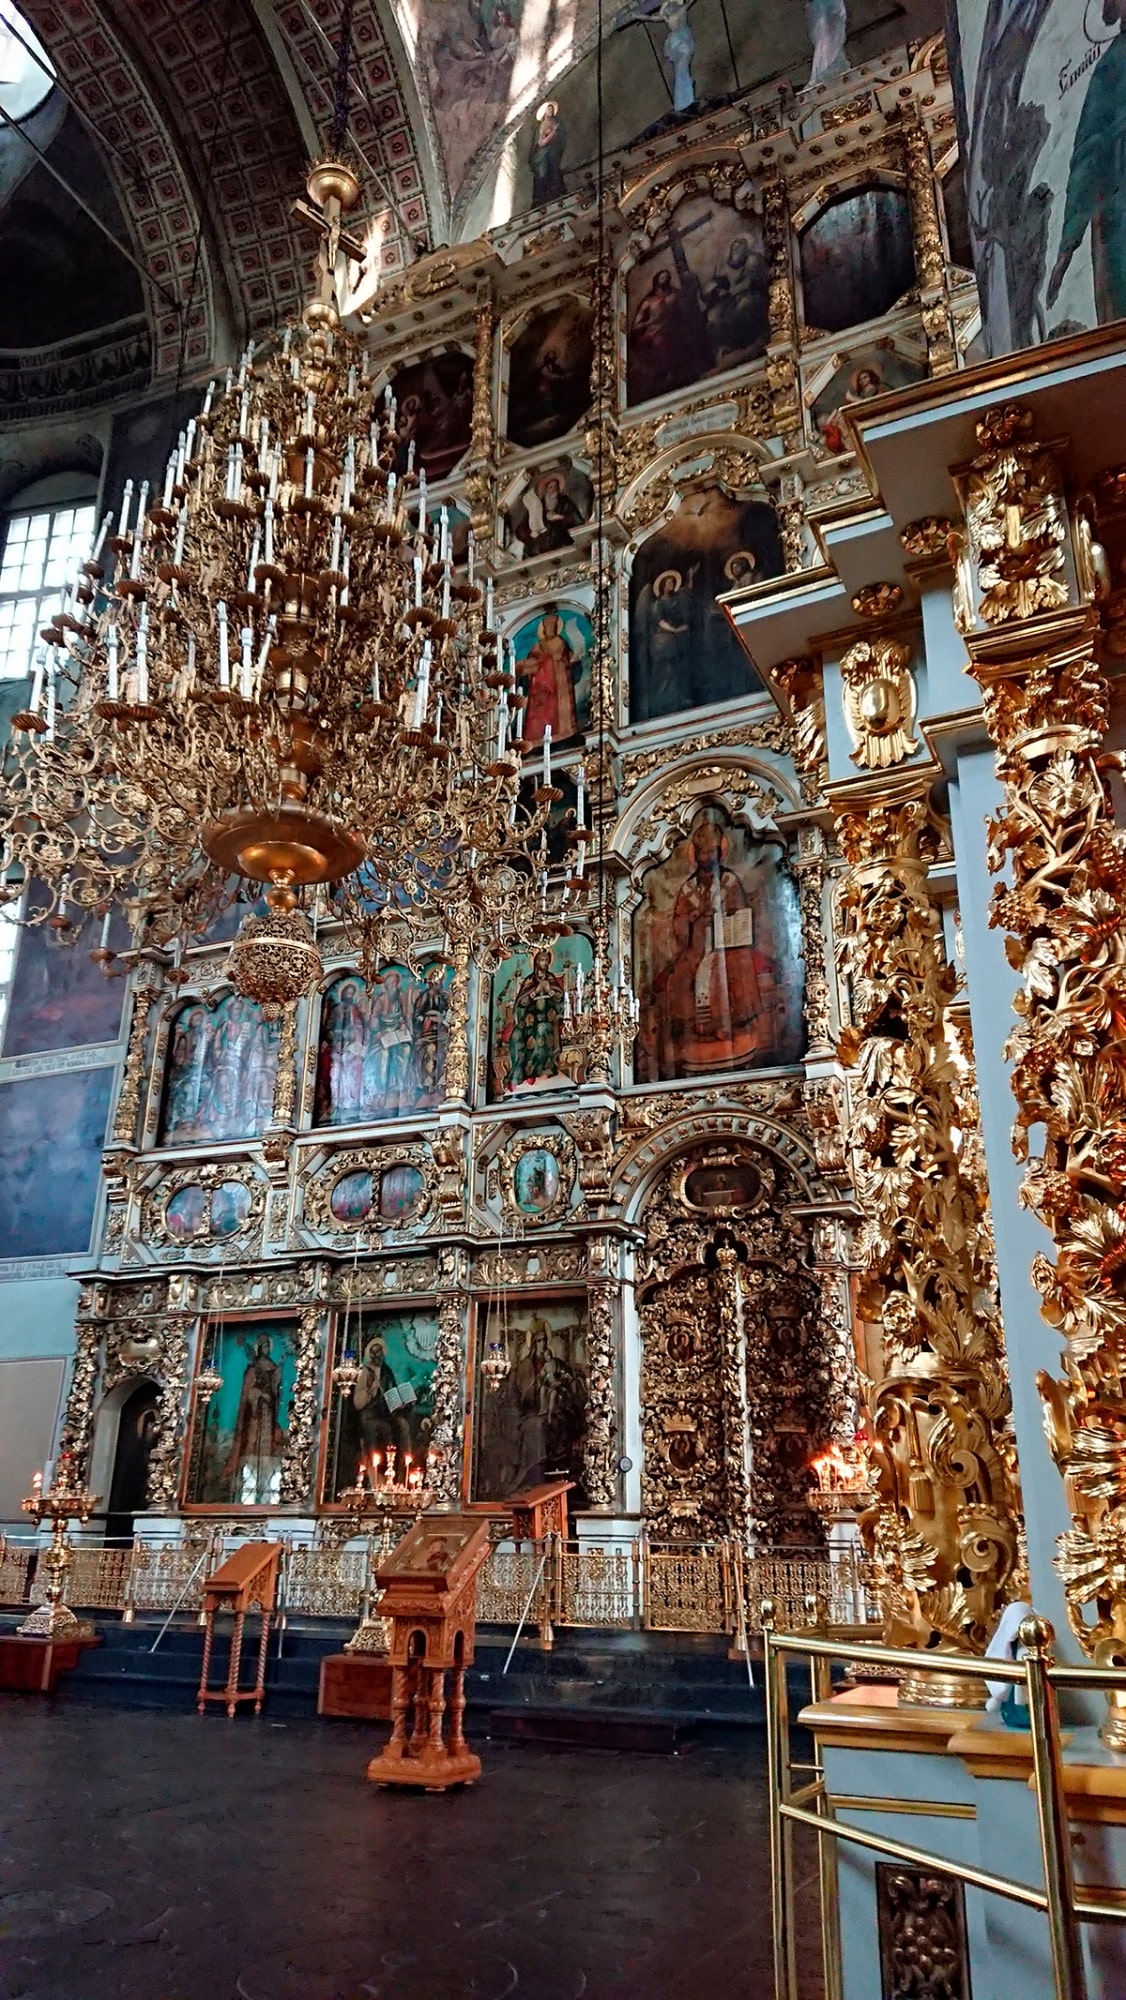 Программу росписей интерьера собора разработал в 1782 году известный архитектор В. И. Баженов.